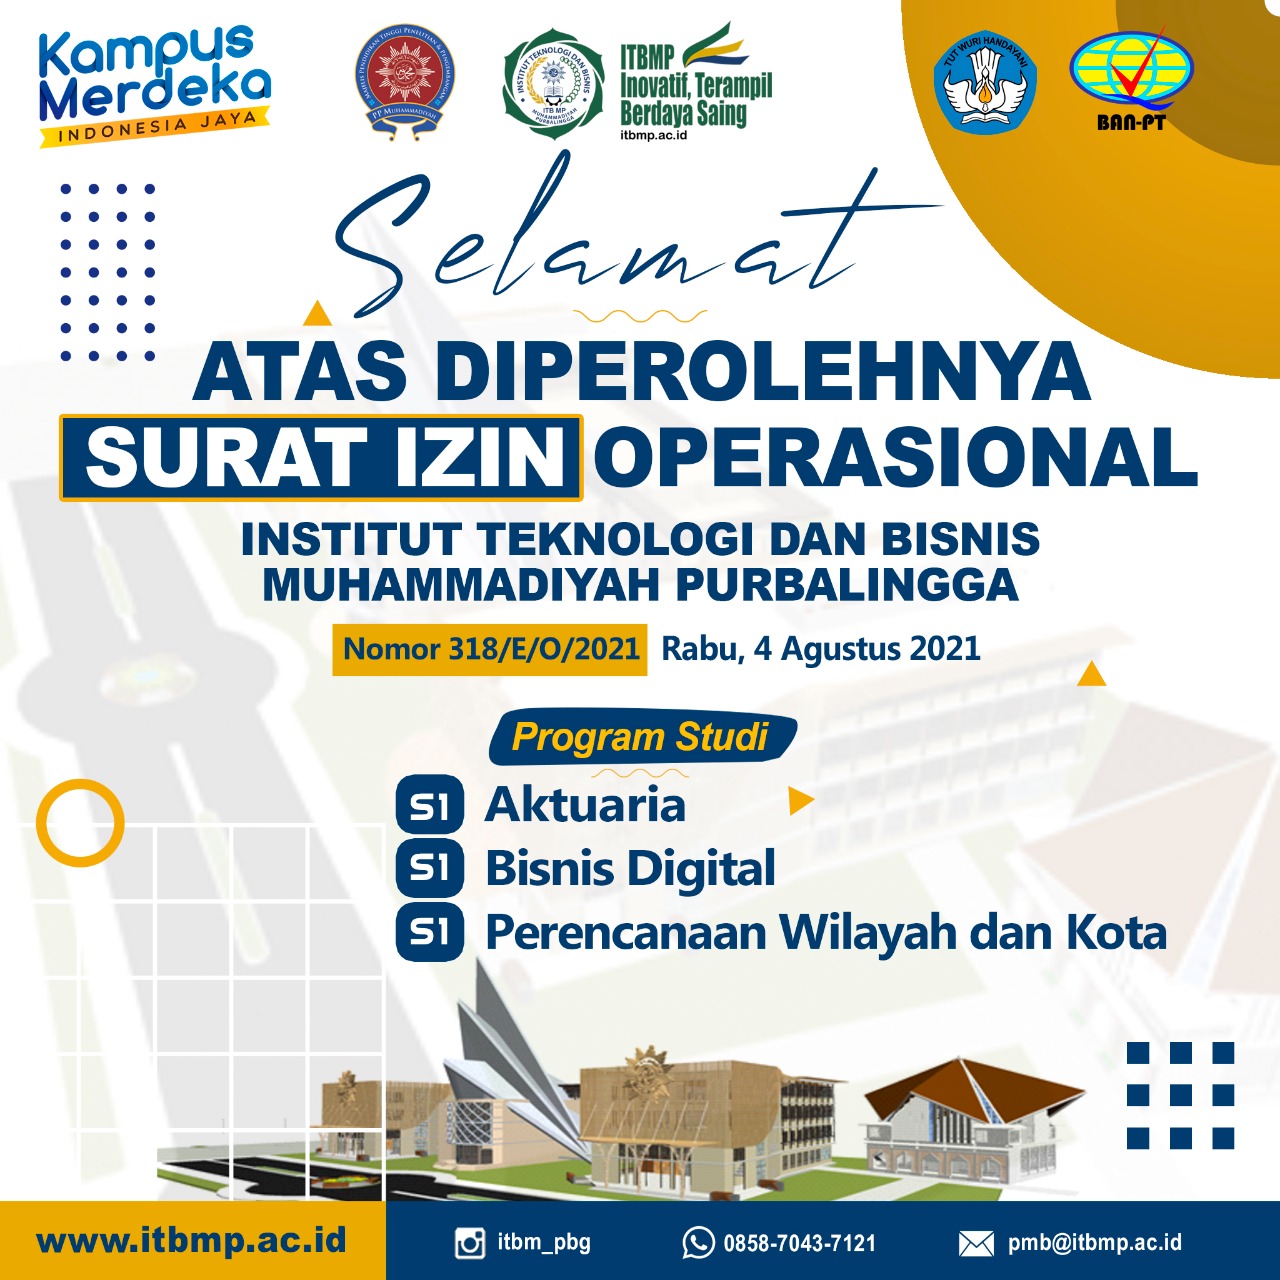 ITB-MP Kampus Muhammadiyah baru di Purbalingga